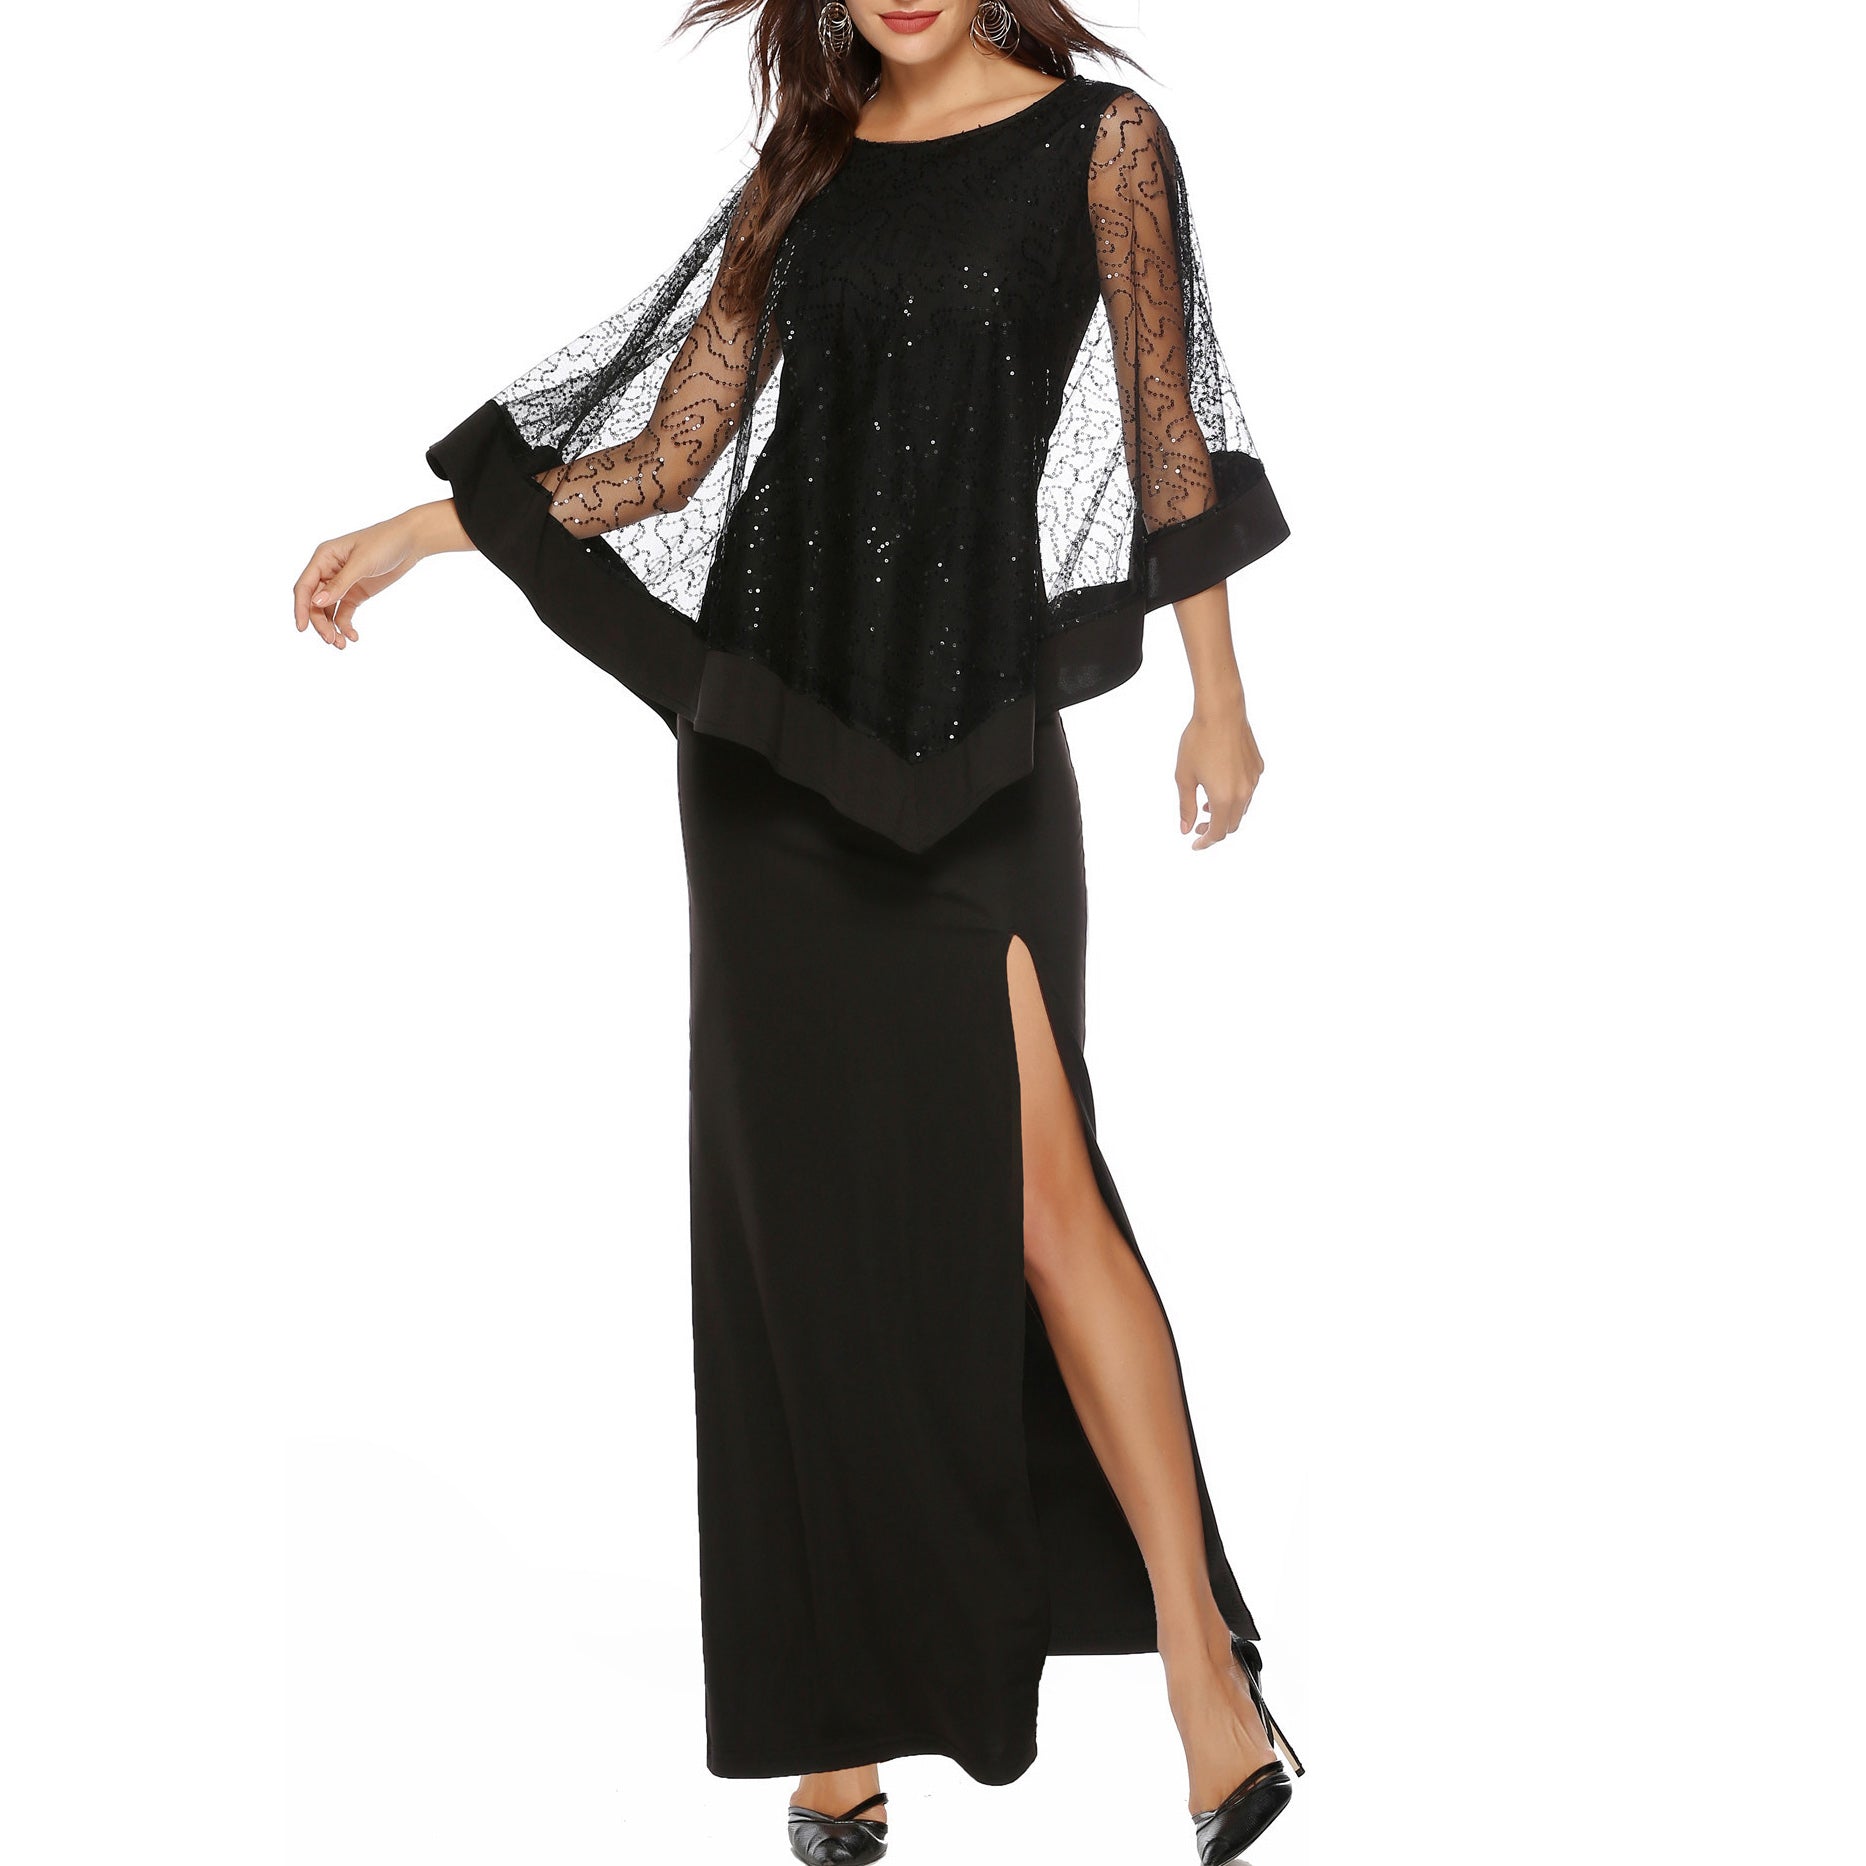 

Rochie lungă și elegantă pentru femei, cu model cu sclipici potrivit pentru evenimente și petreceri